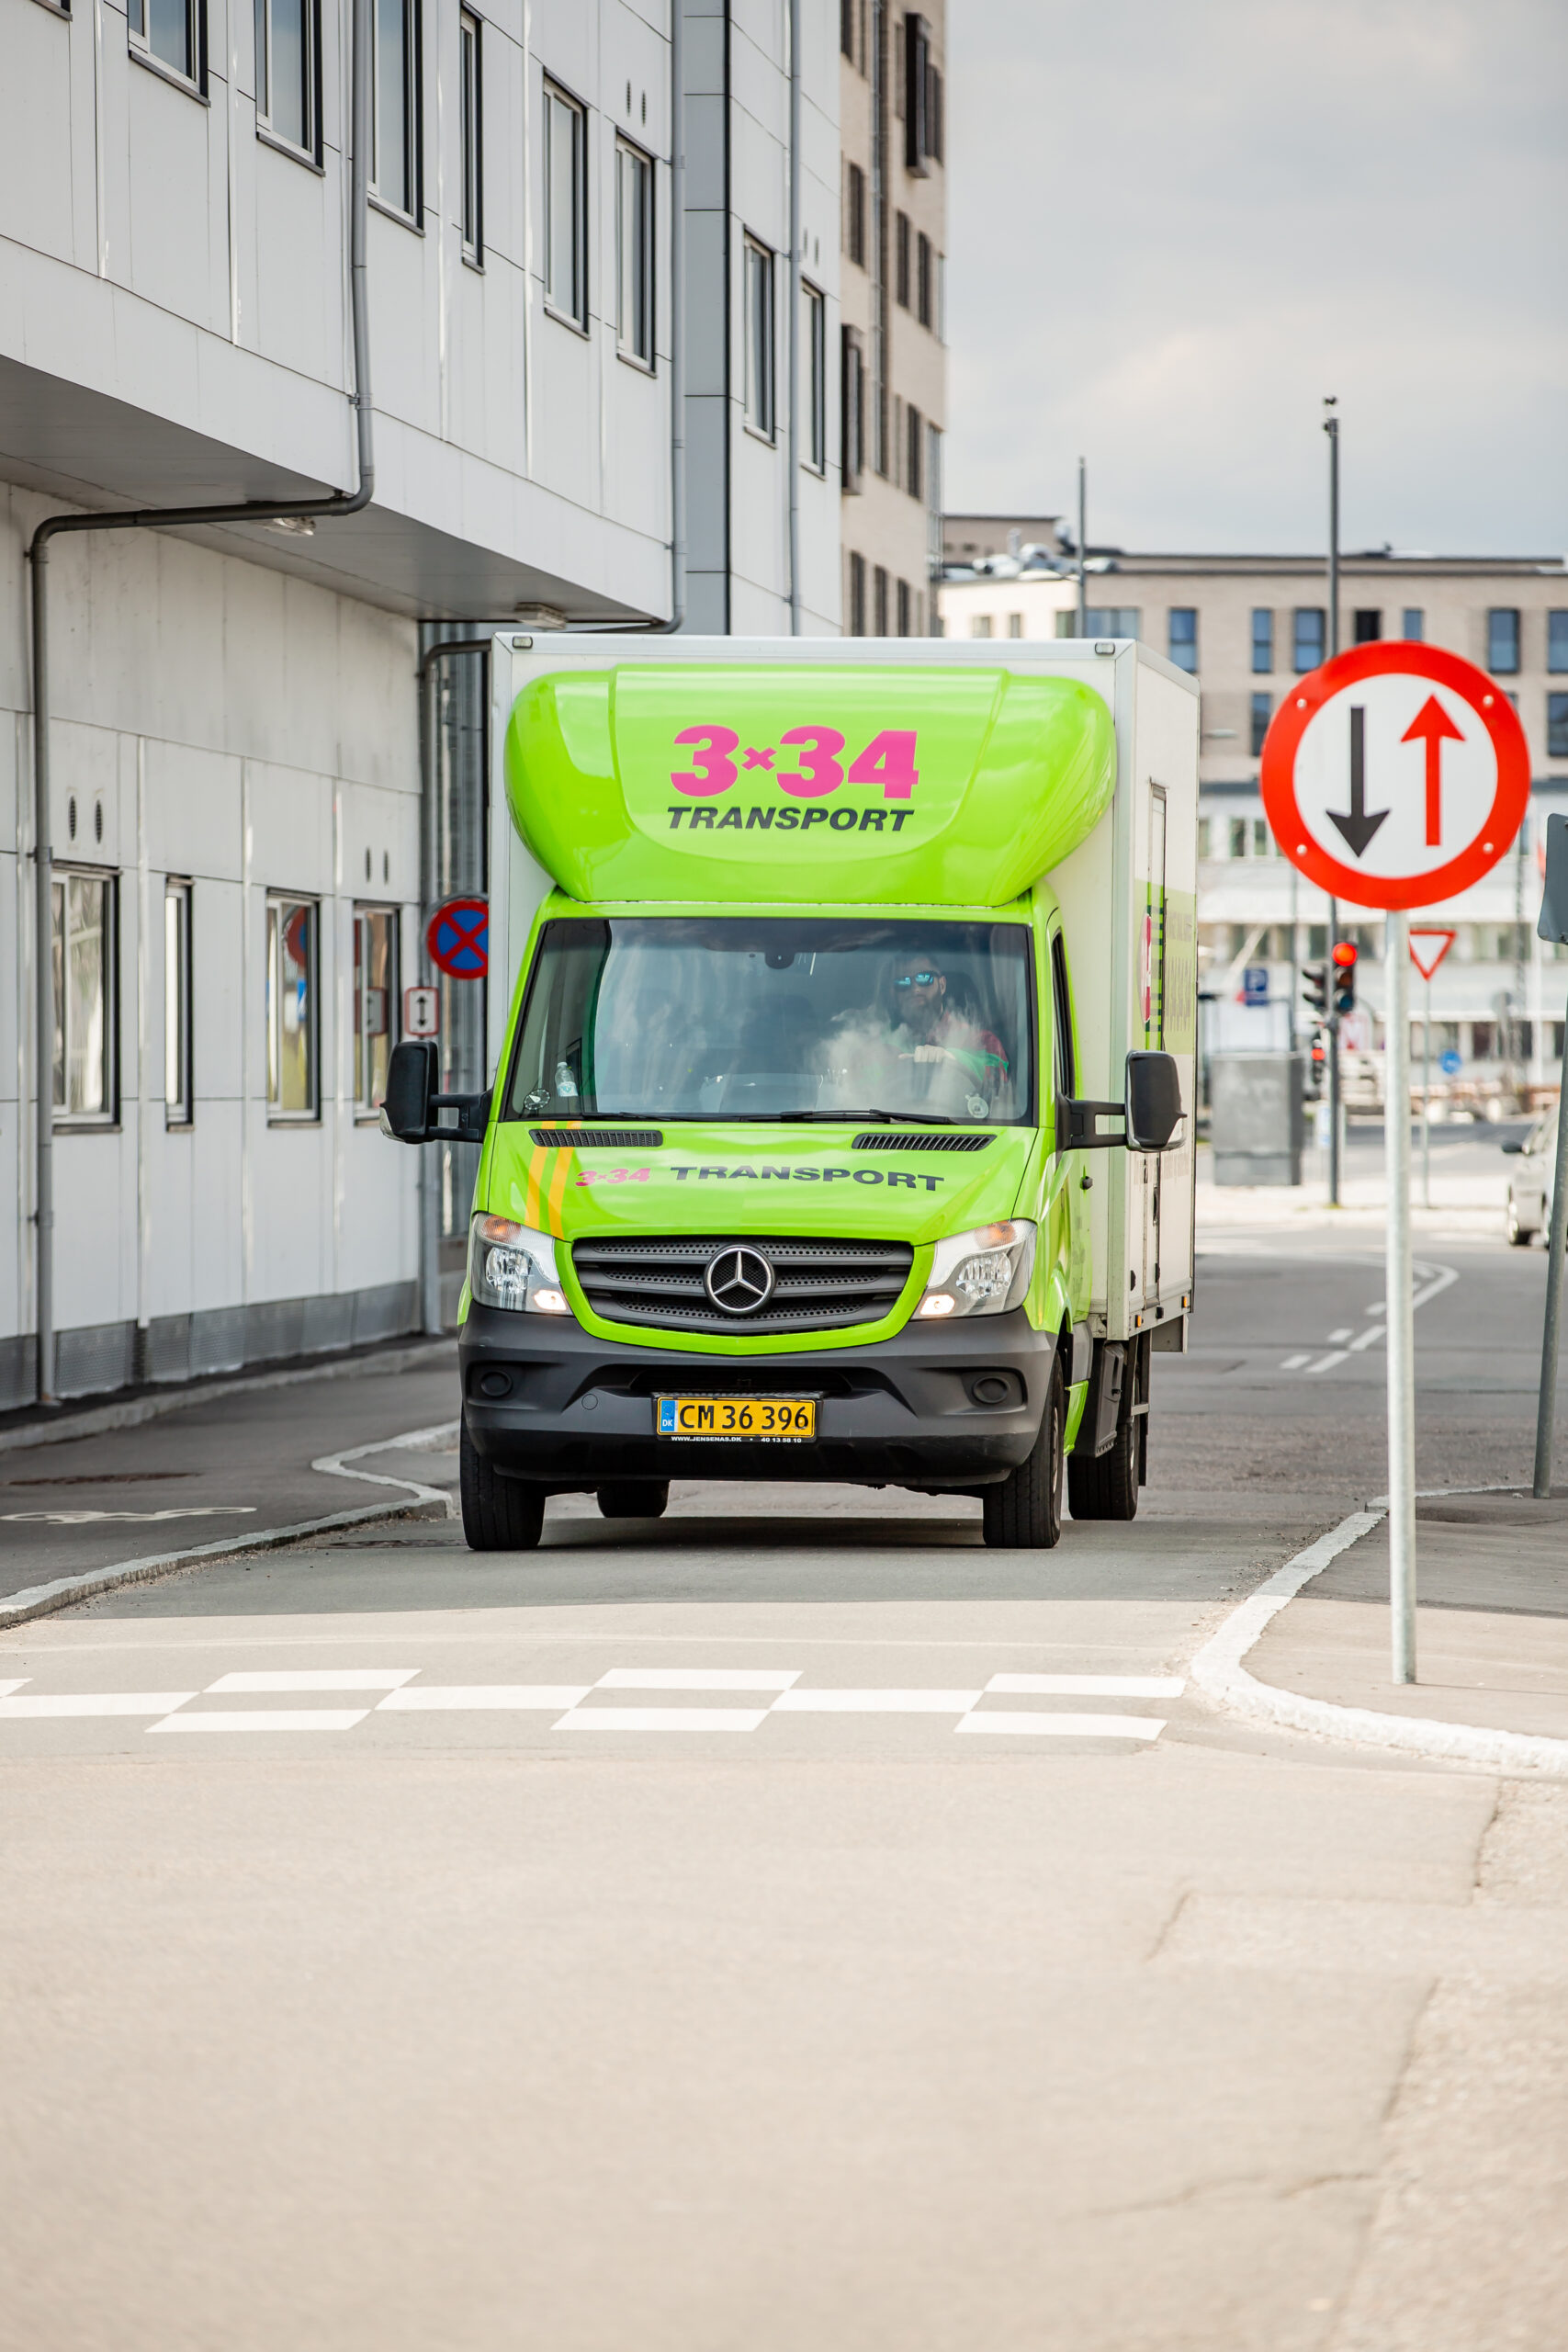 Flyttebil kommer for at flytte dine ting i Roskilde